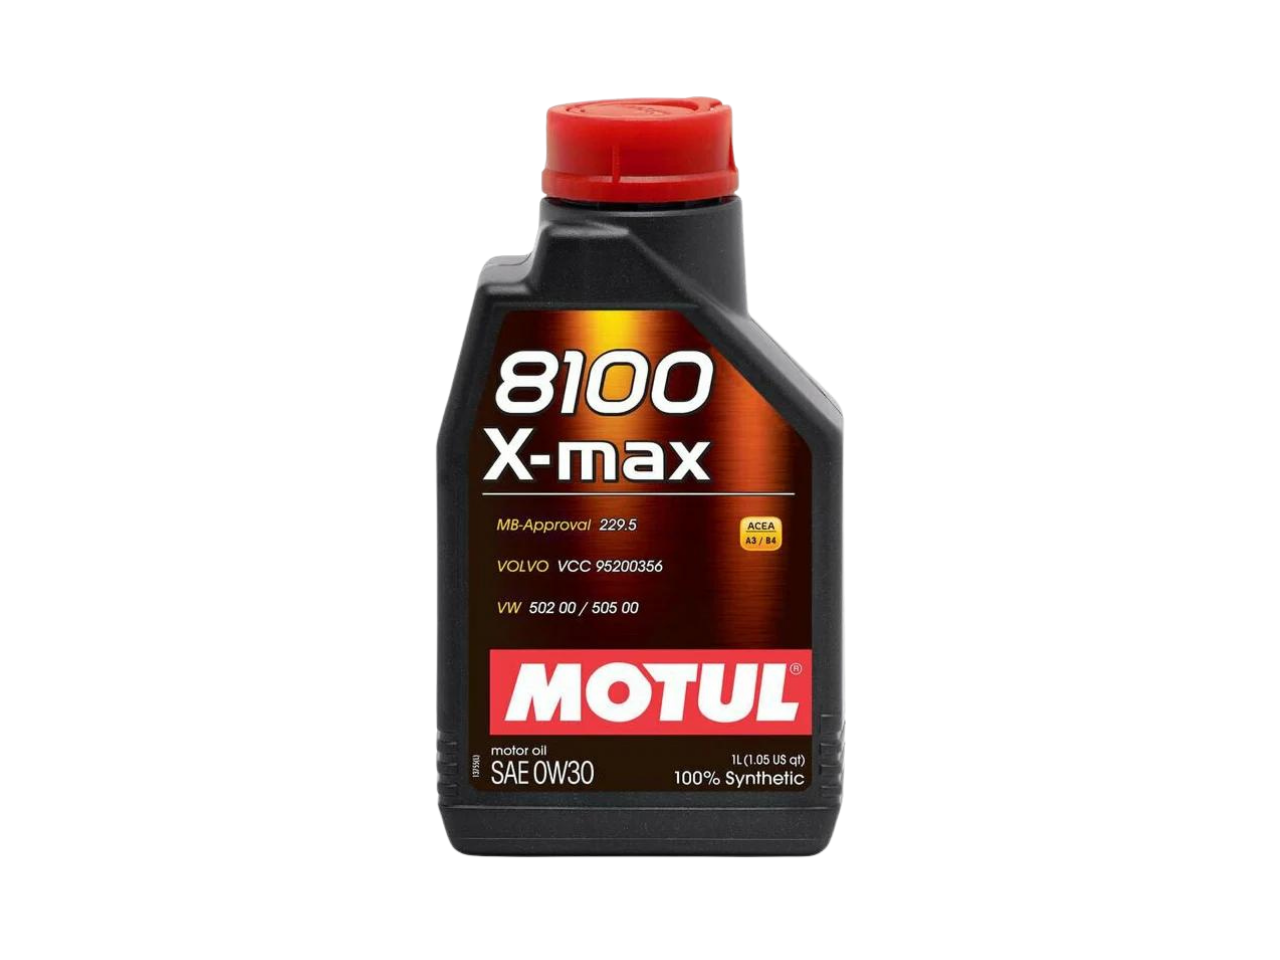 Купить недорого Моторное масло Motul 8100 X-max в Москве